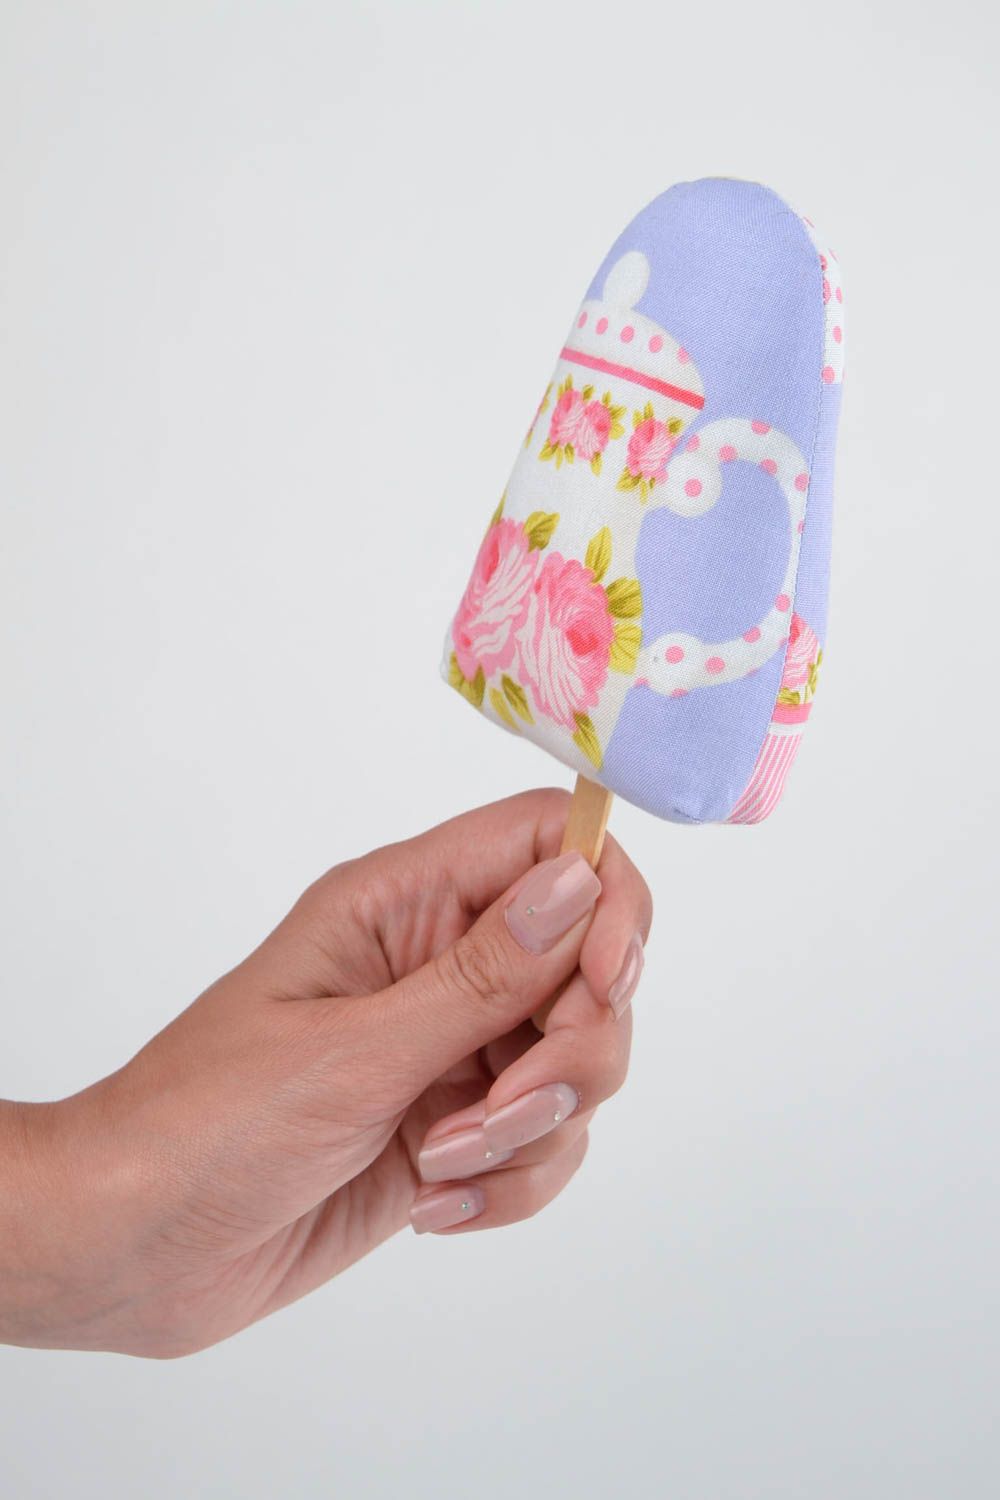 Игрушка мороженое из ткани игрушка ручной работы интересный подарок для дома фото 2